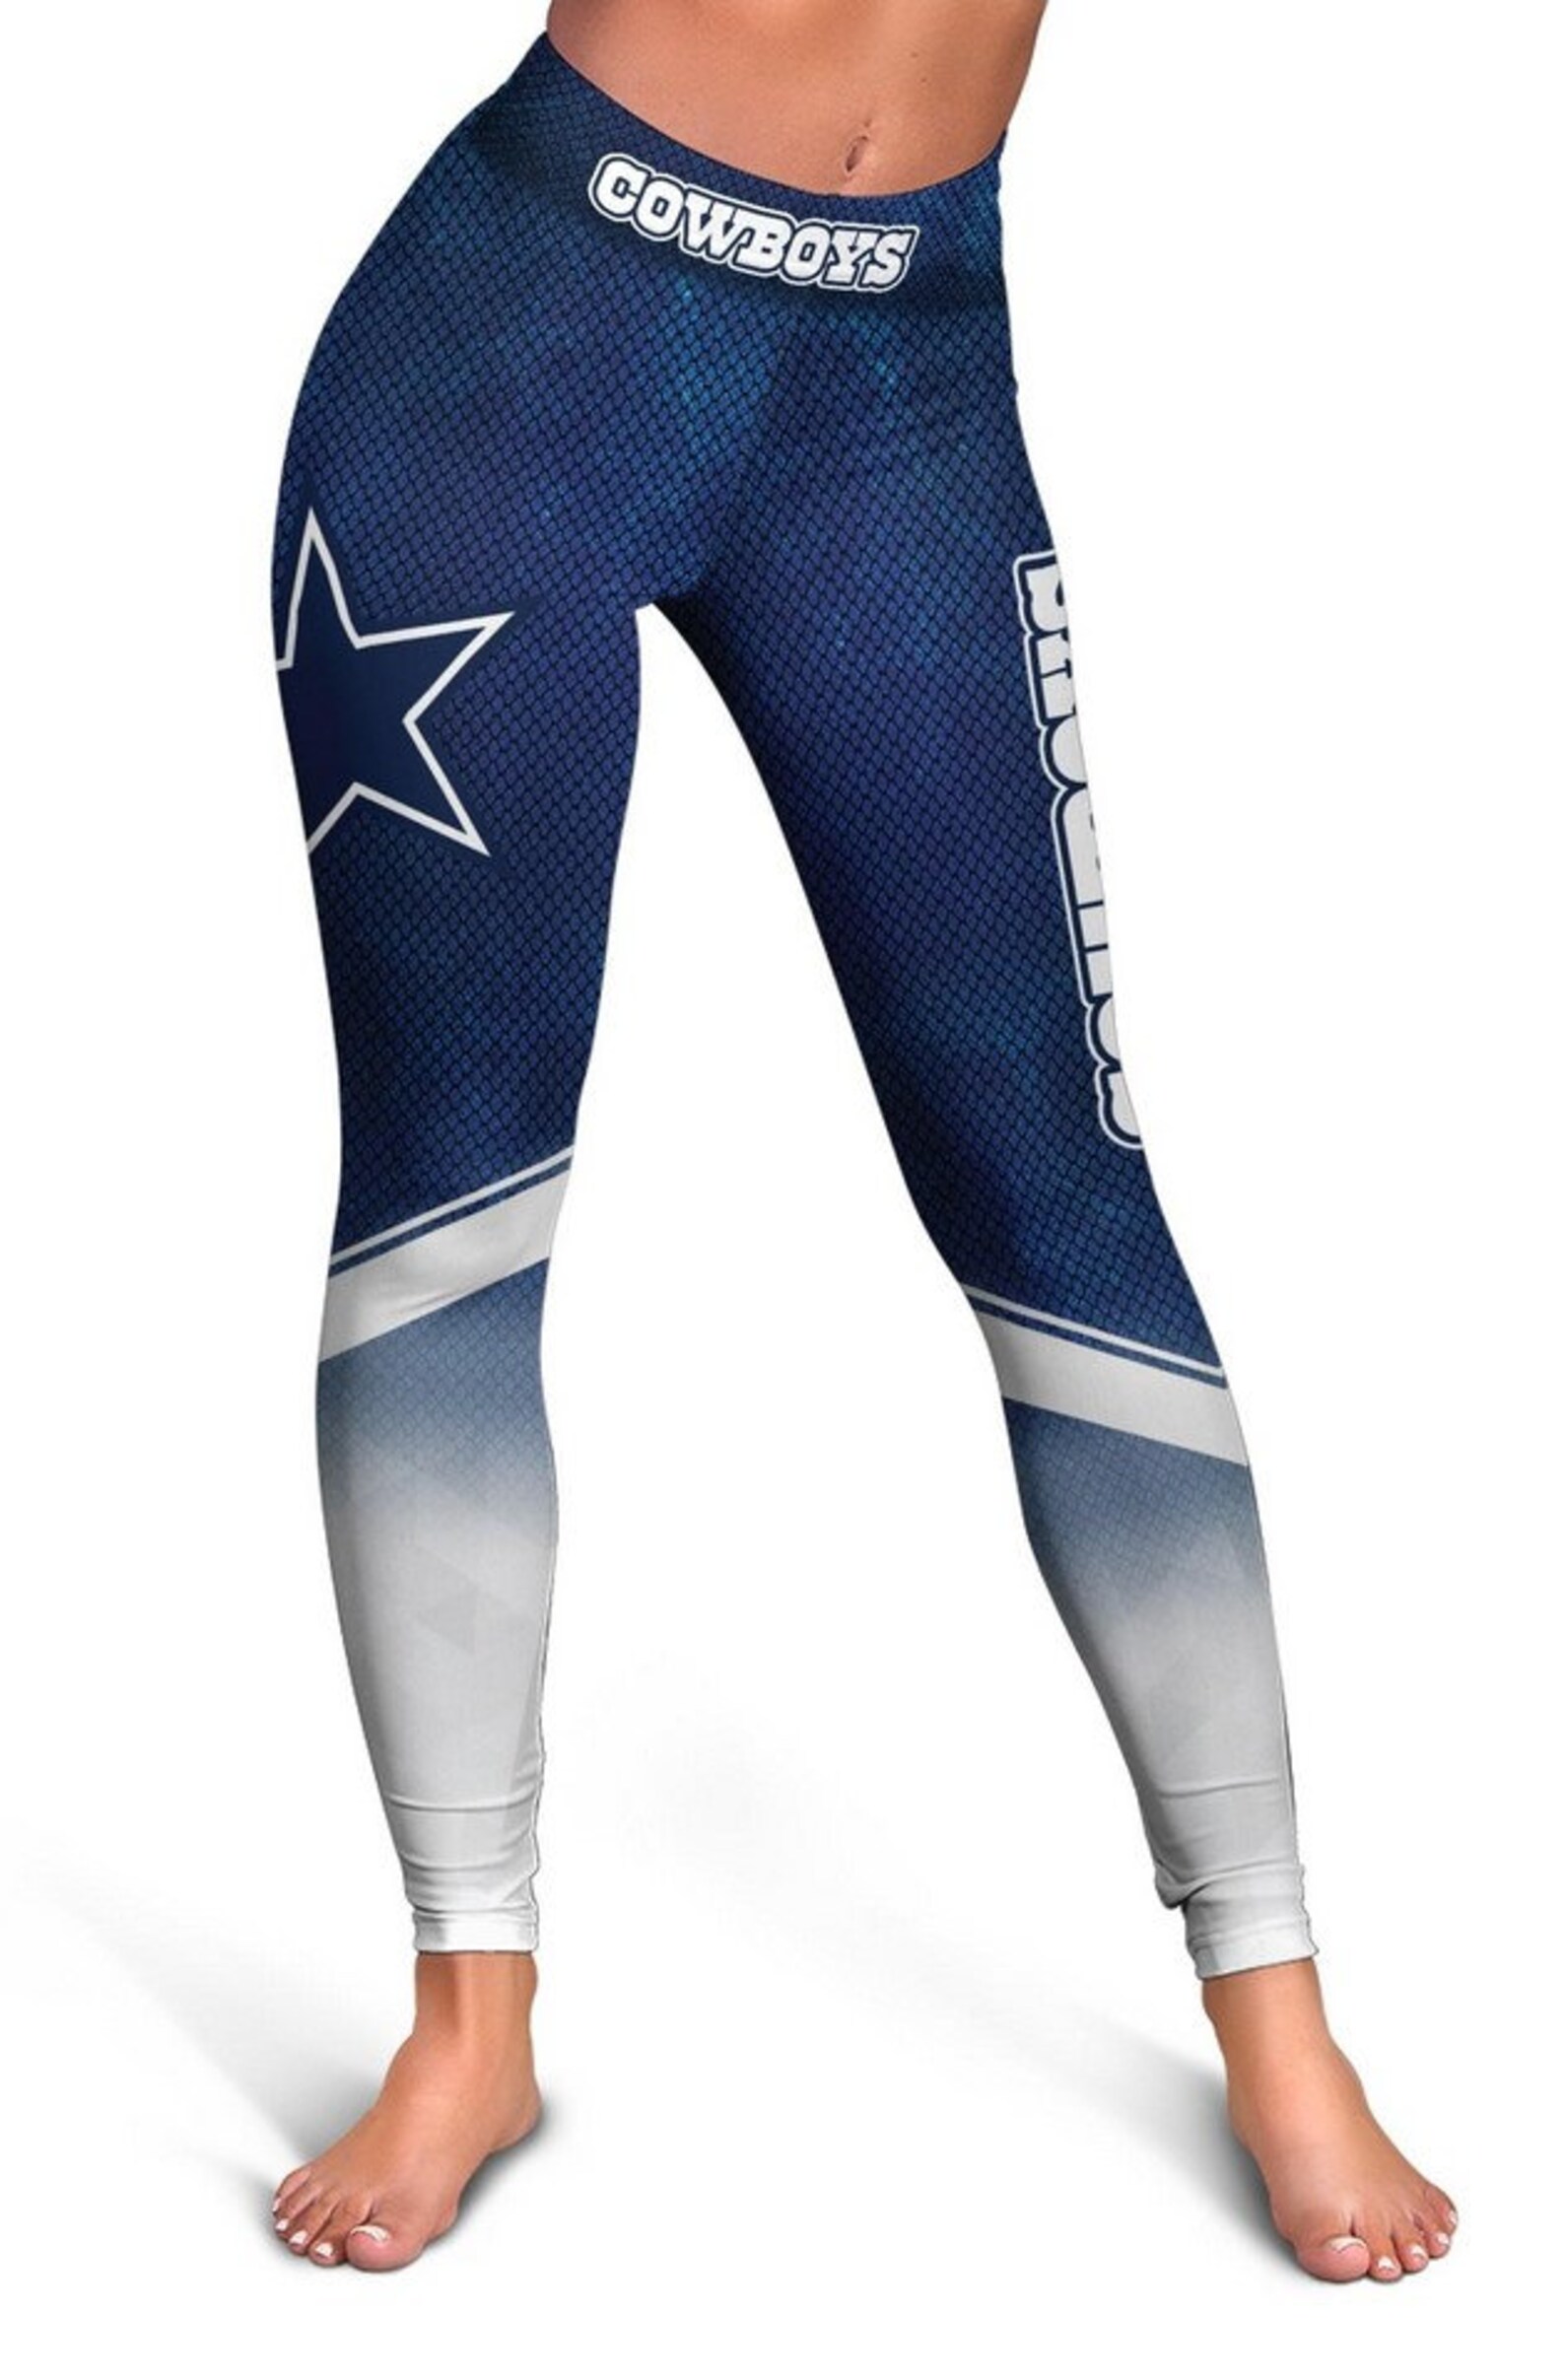 Dallas Cowboys Women Leggings SF 49ers NFL Leggings Gym | Etsy